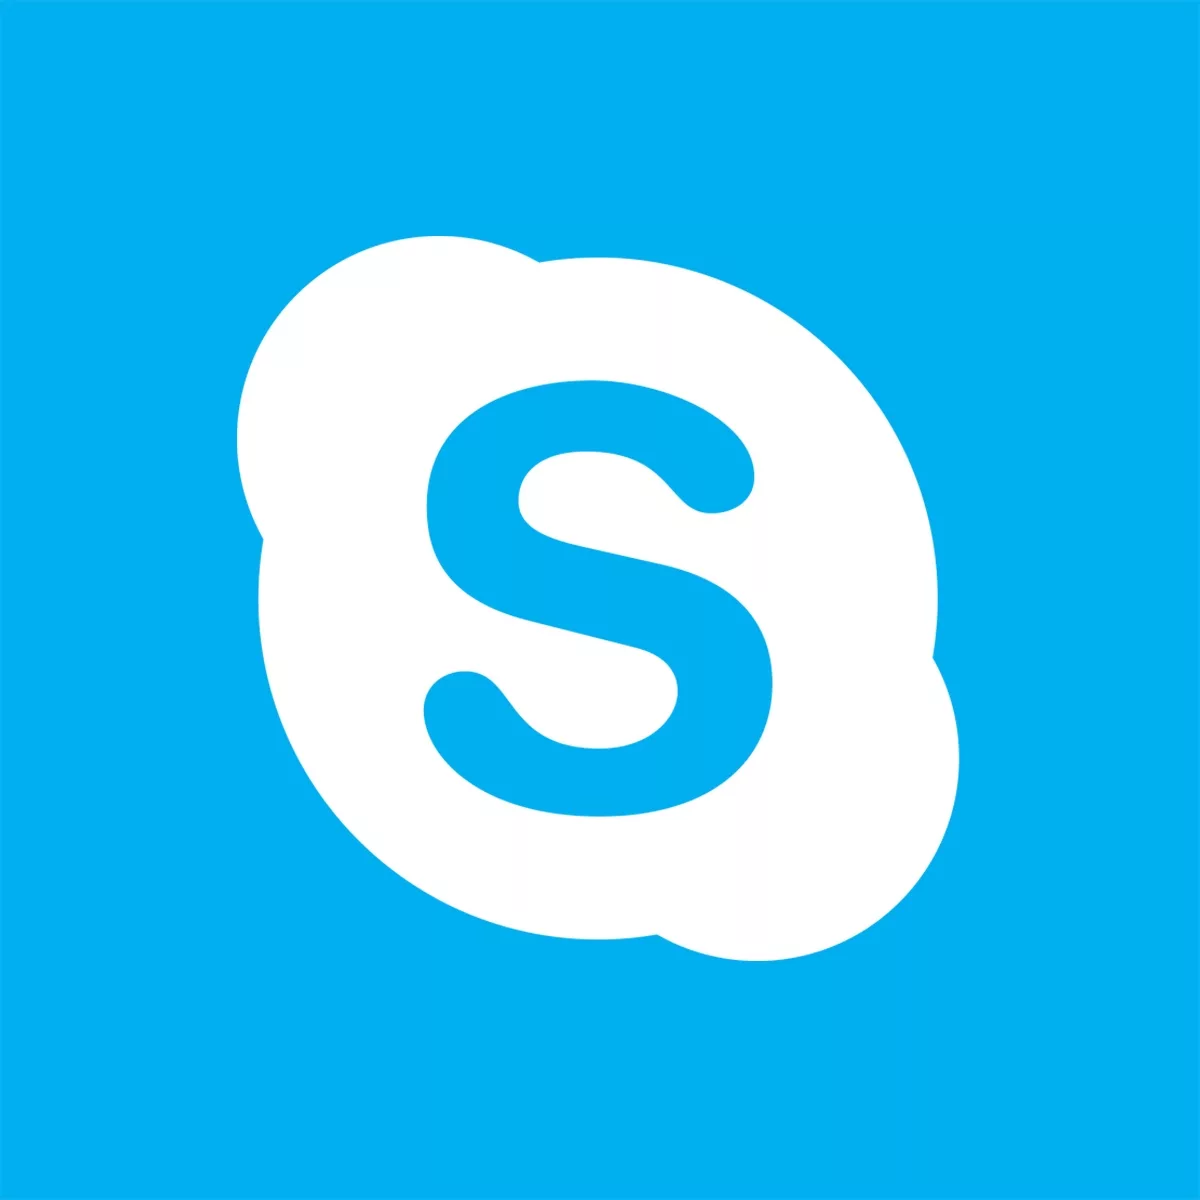 Изображение: ❎ Skype баланс для звонков £110.00 (GBP)≈$130.00 (USD) с почтой в комплекте ❎ Читаем описание